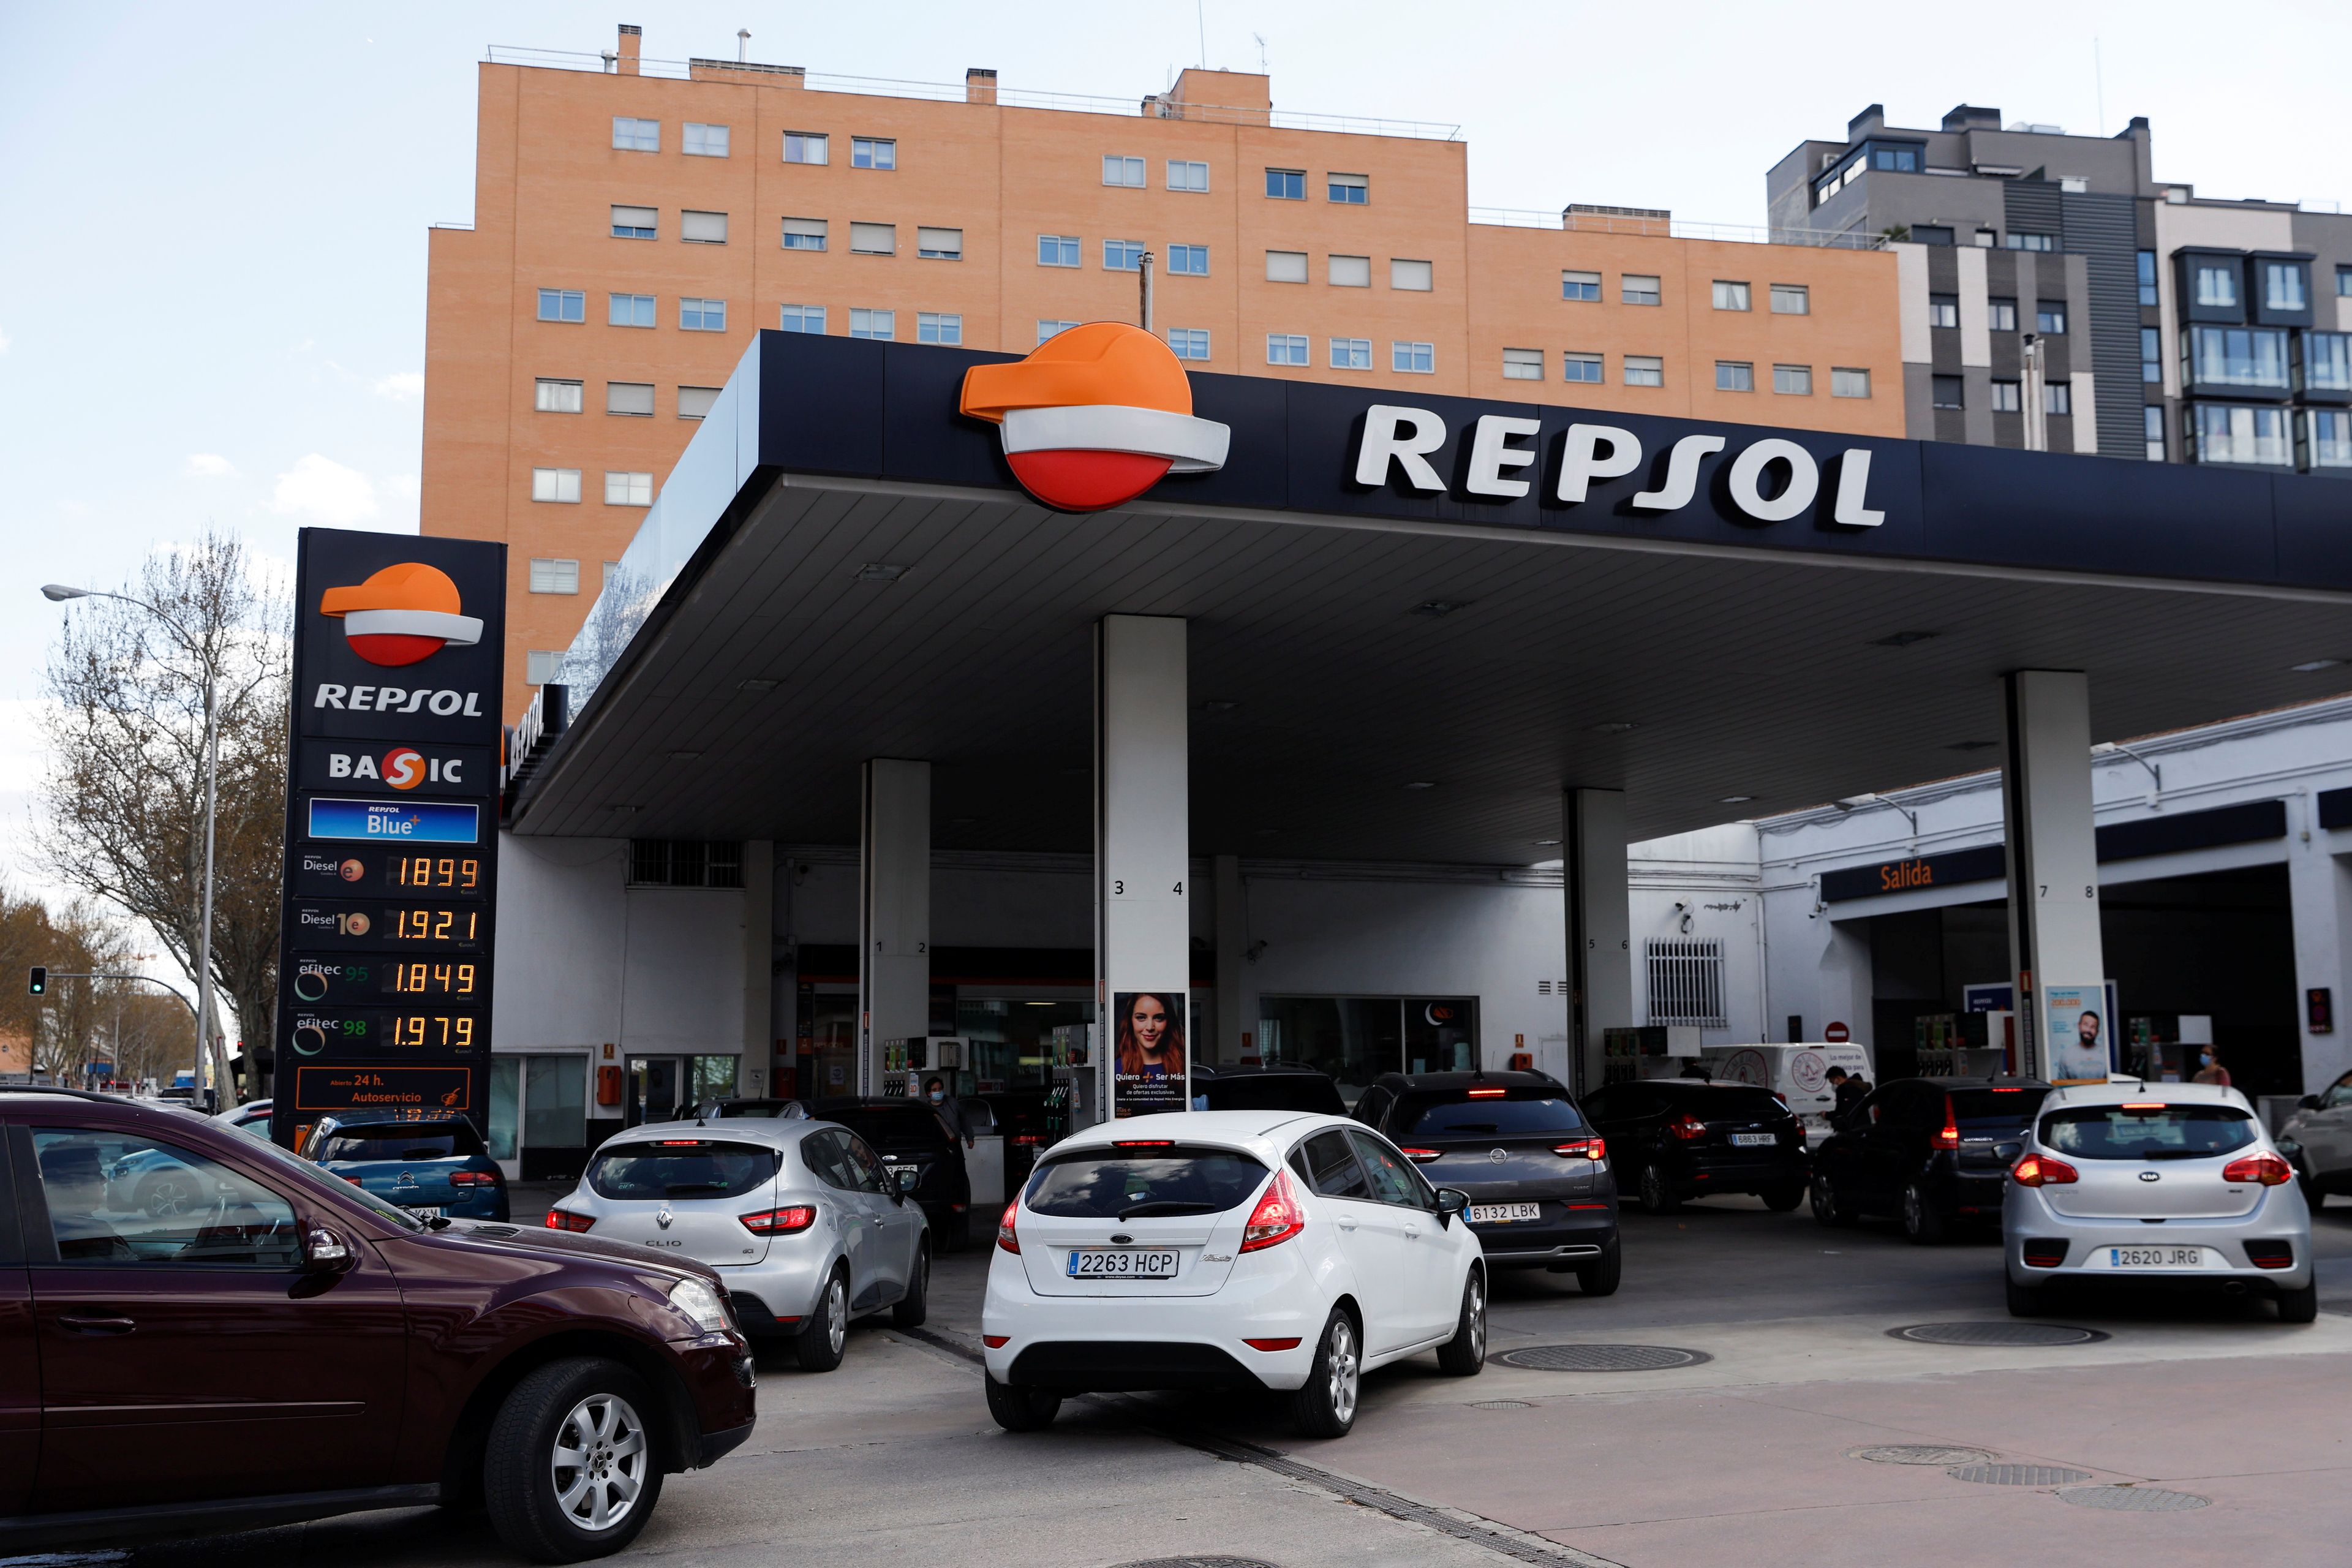 Gasolinera de Repsol